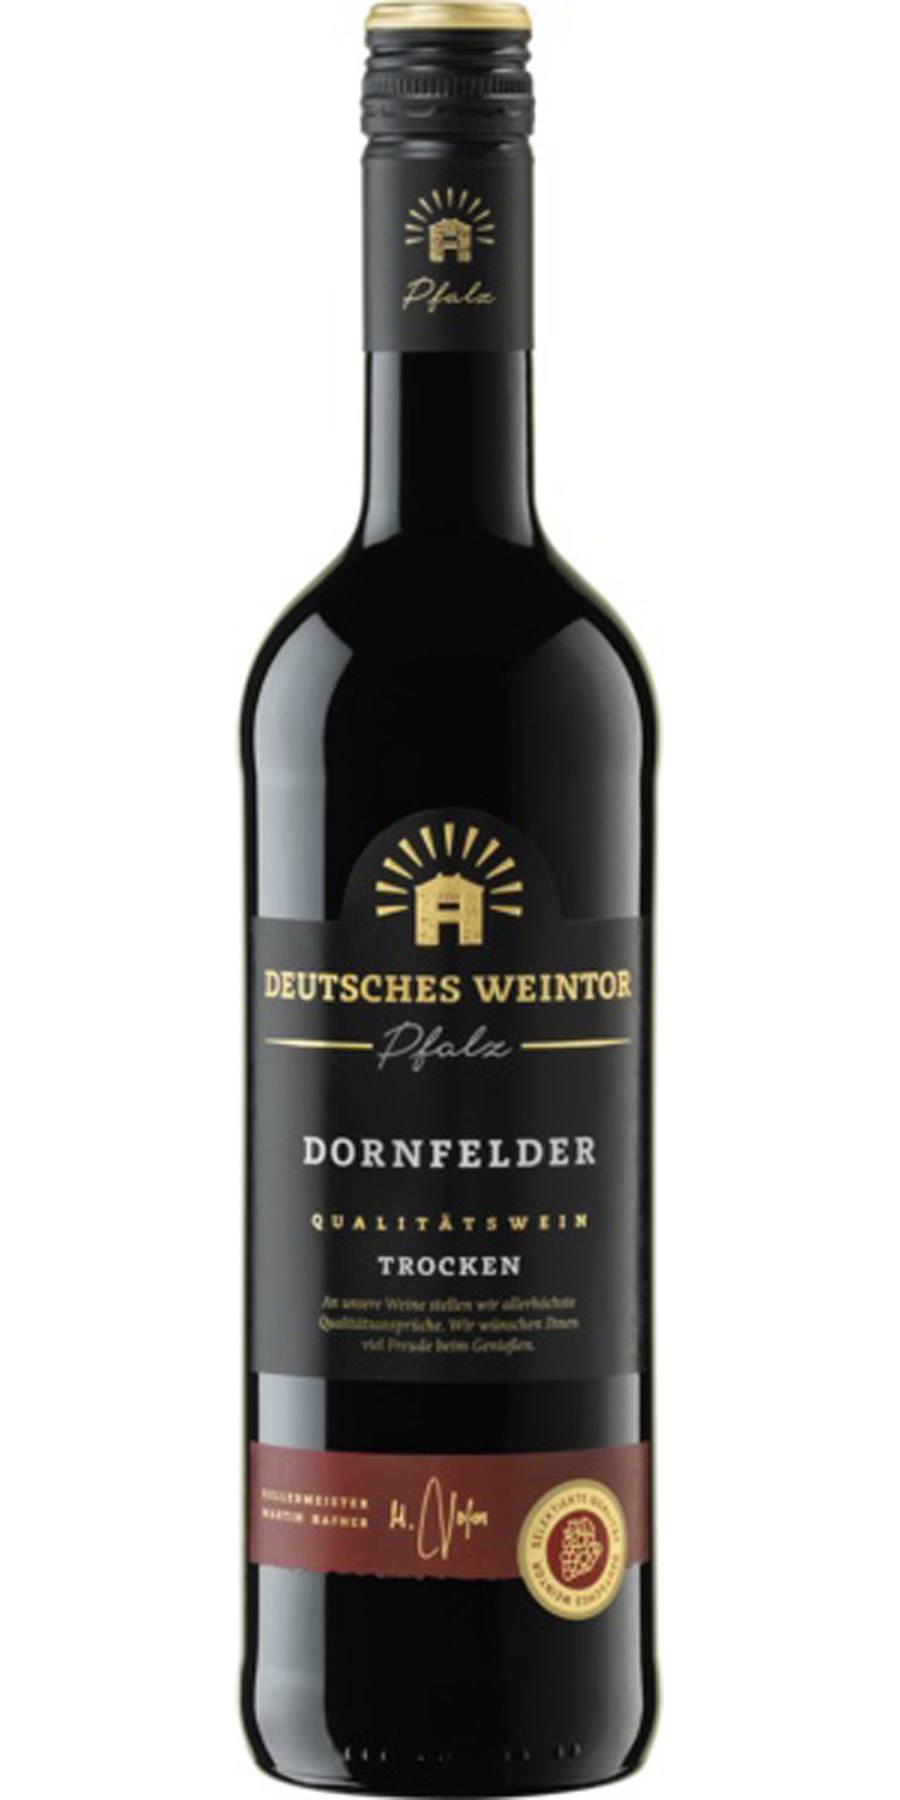 Deutsches Weintor, Dornfelder Pfalz QbA trocken